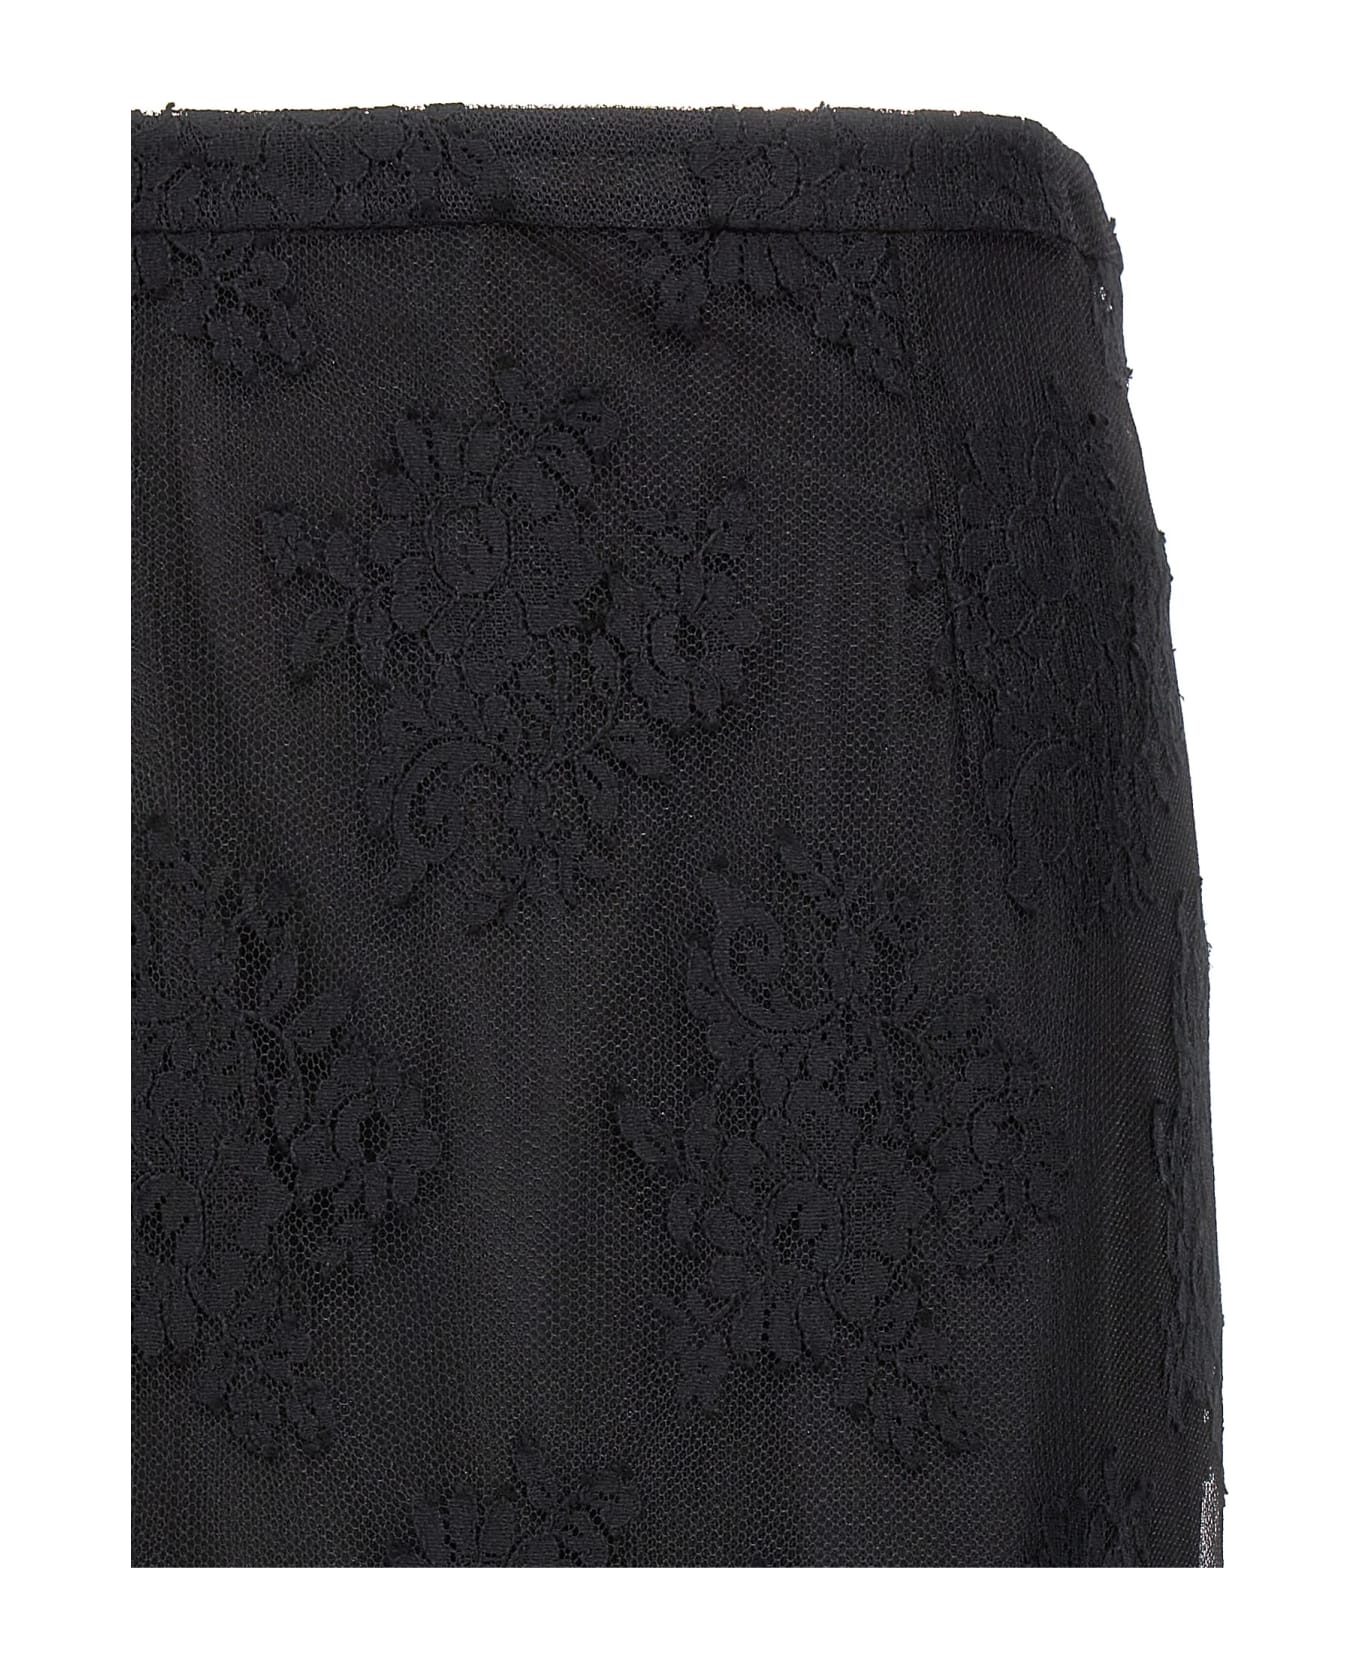 Dolce & Gabbana Lace Sheath Skirt - Black  